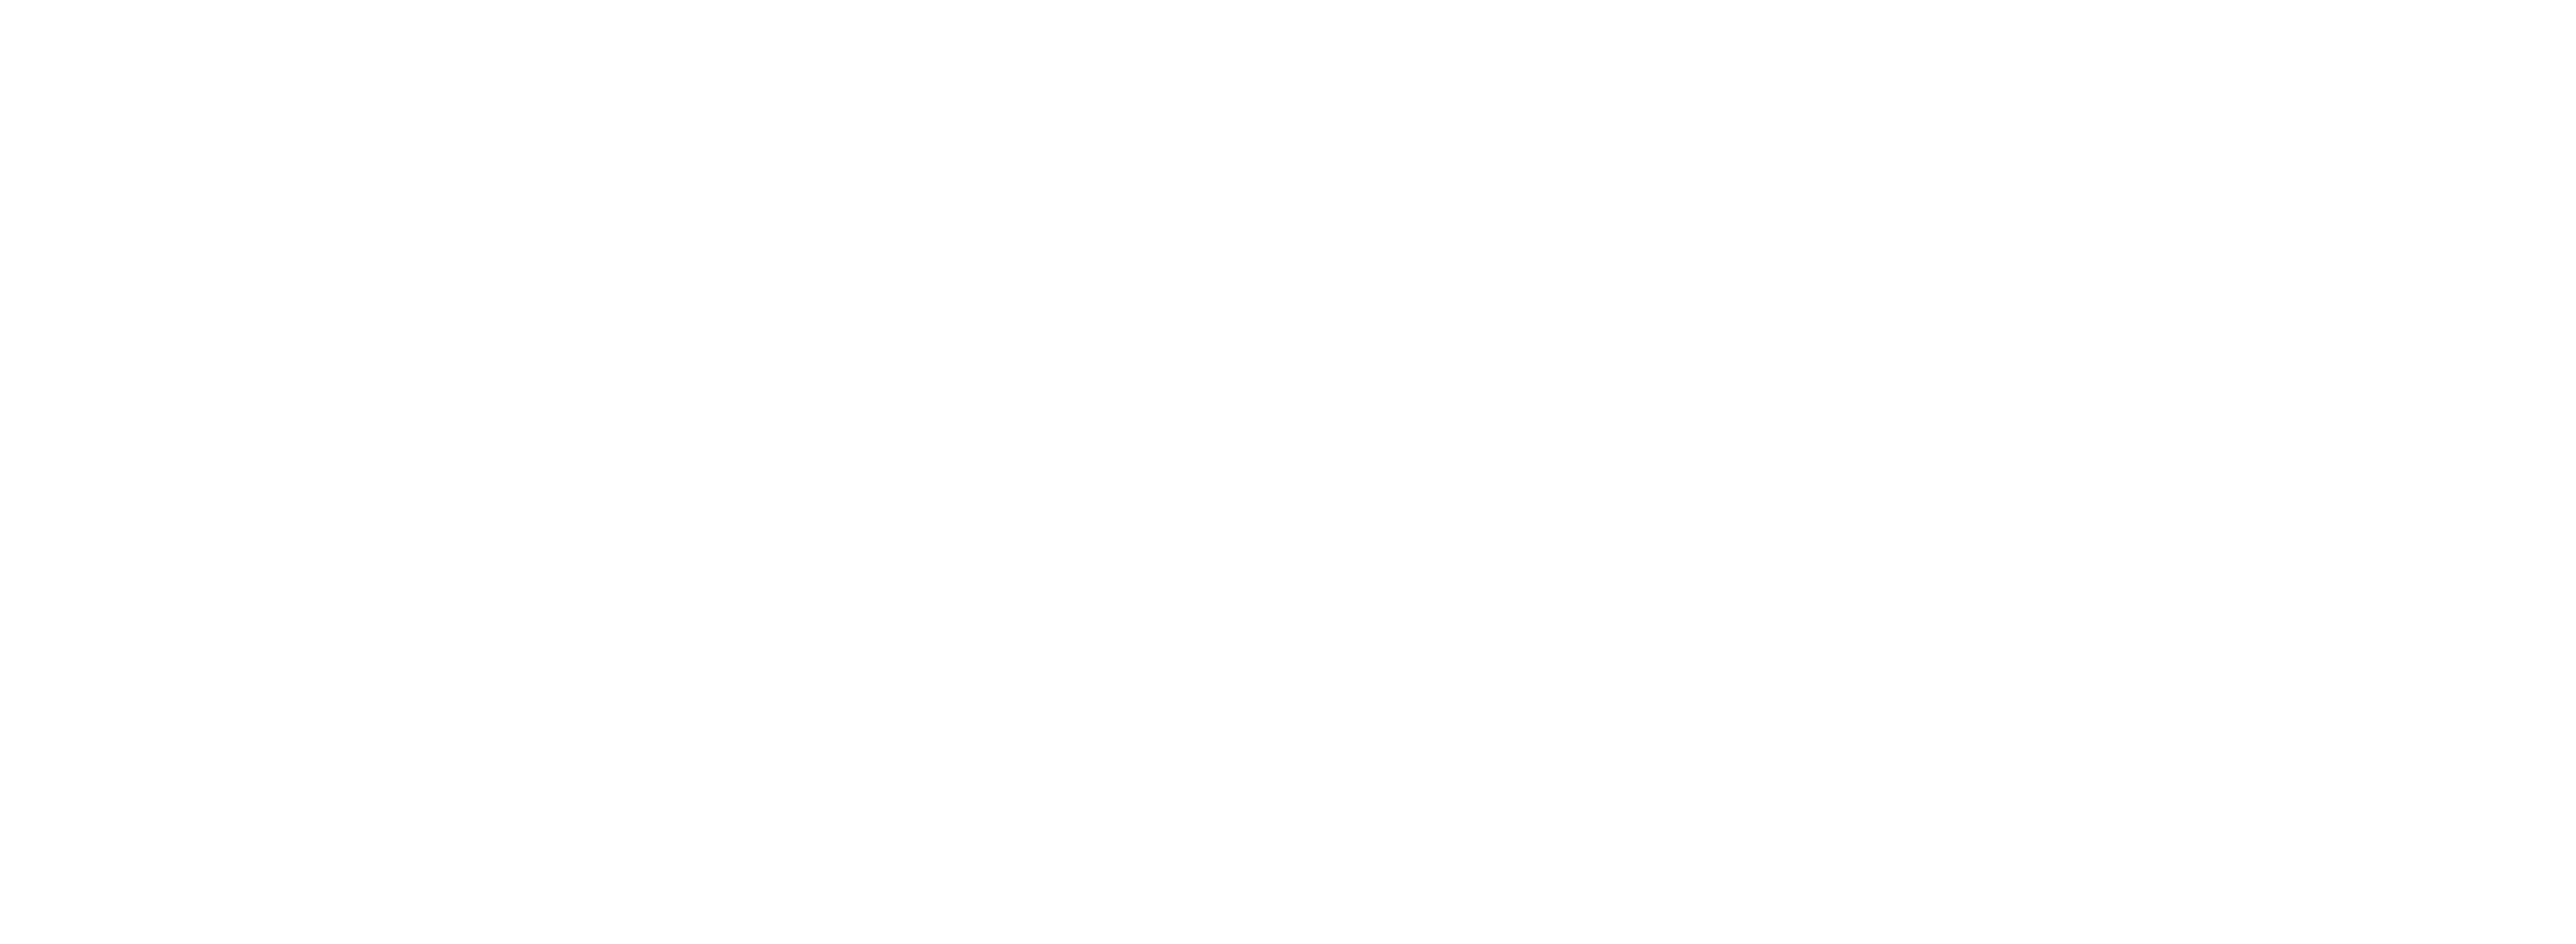 GrantThornton Logo